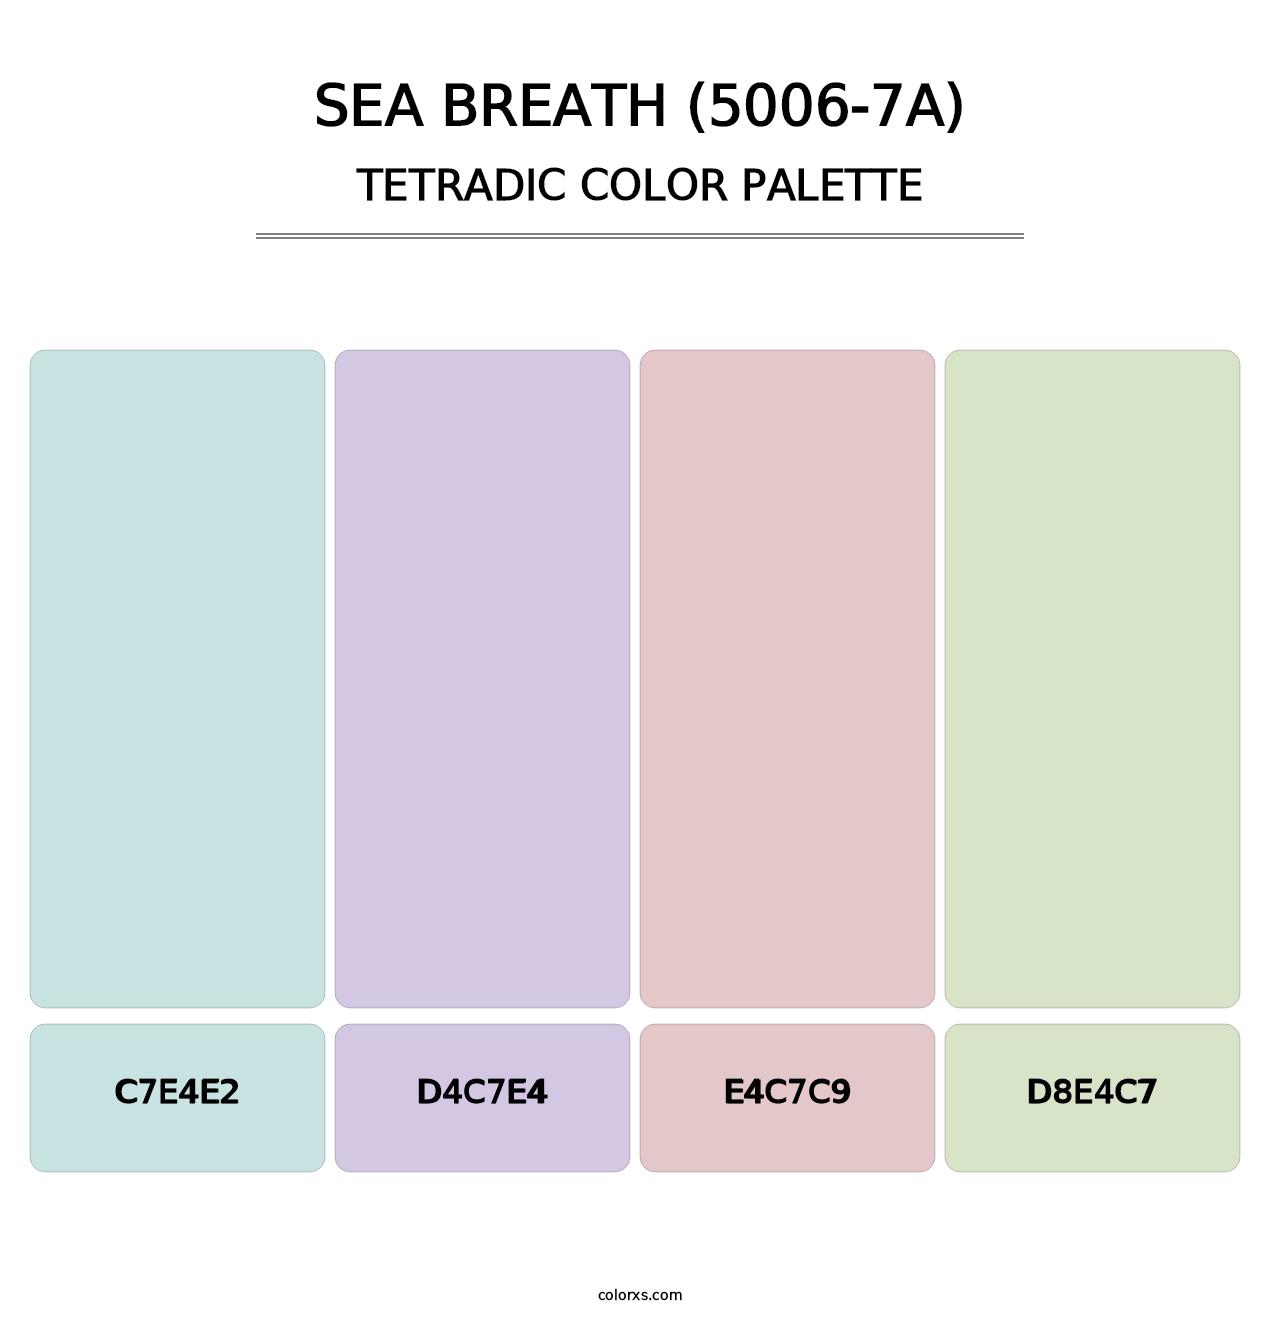 Sea Breath (5006-7A) - Tetradic Color Palette